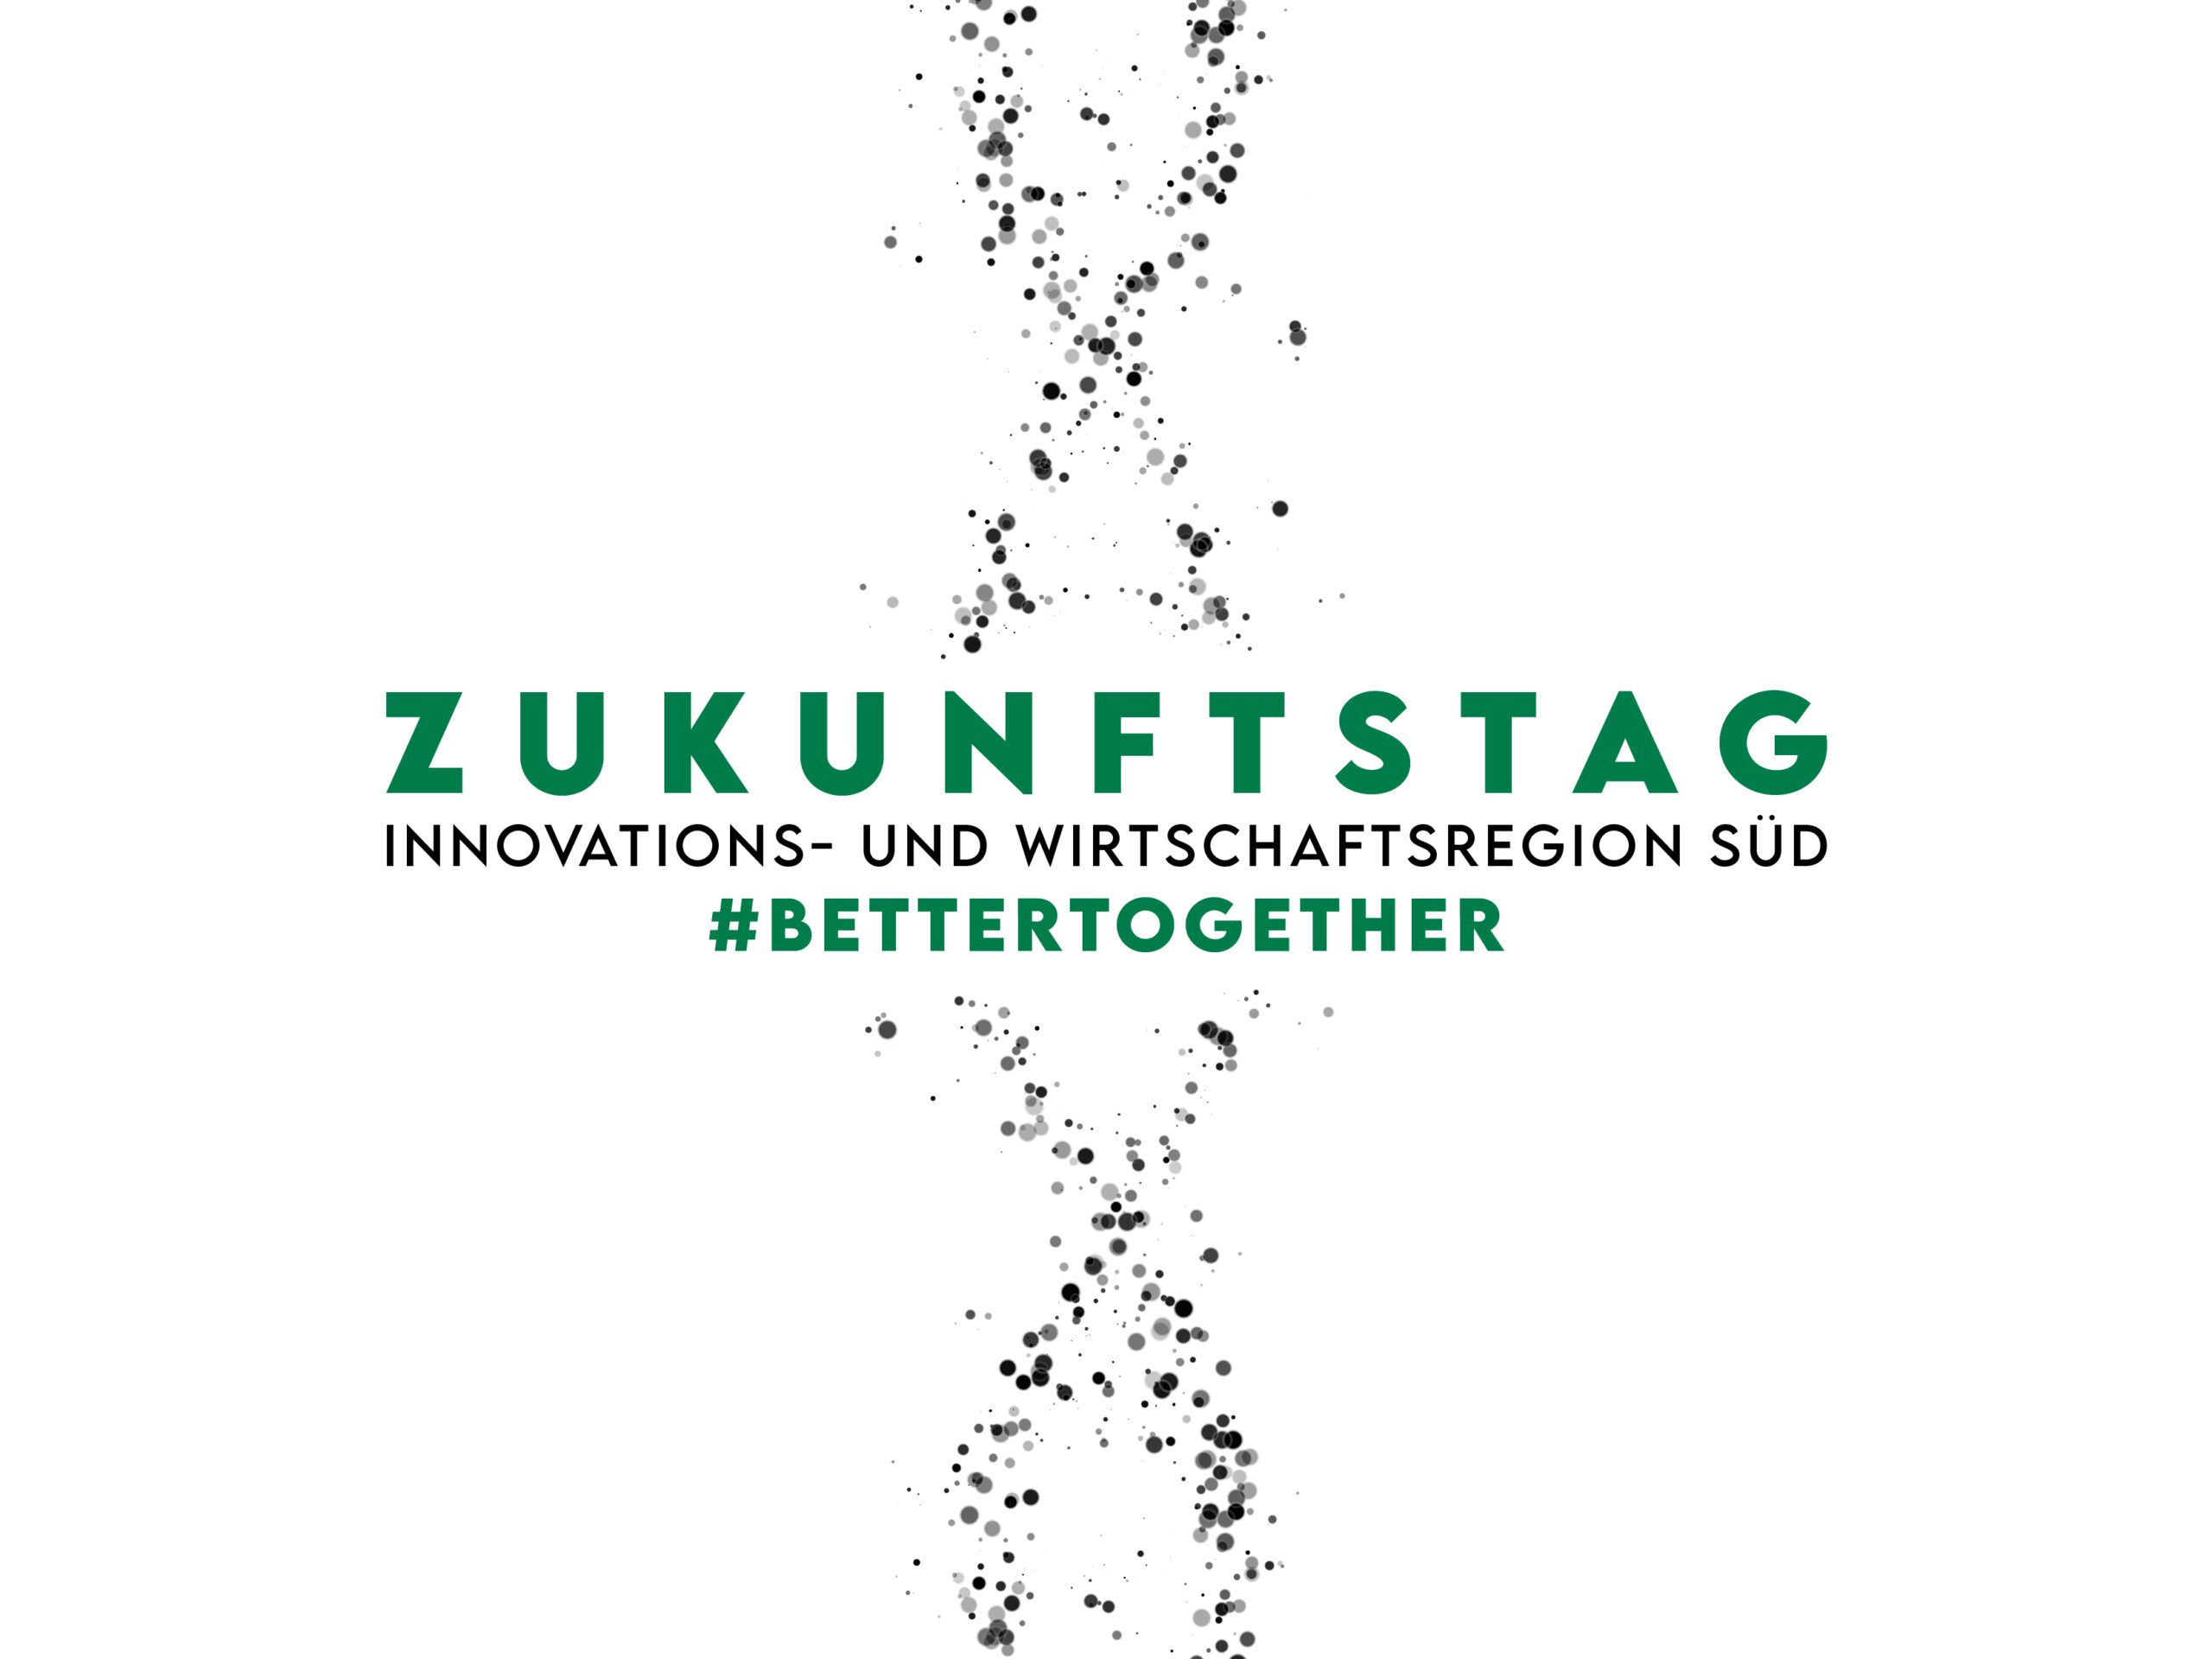 ZUKUNFTSTAG – Innovations- und Wirtschaftsregion Süd